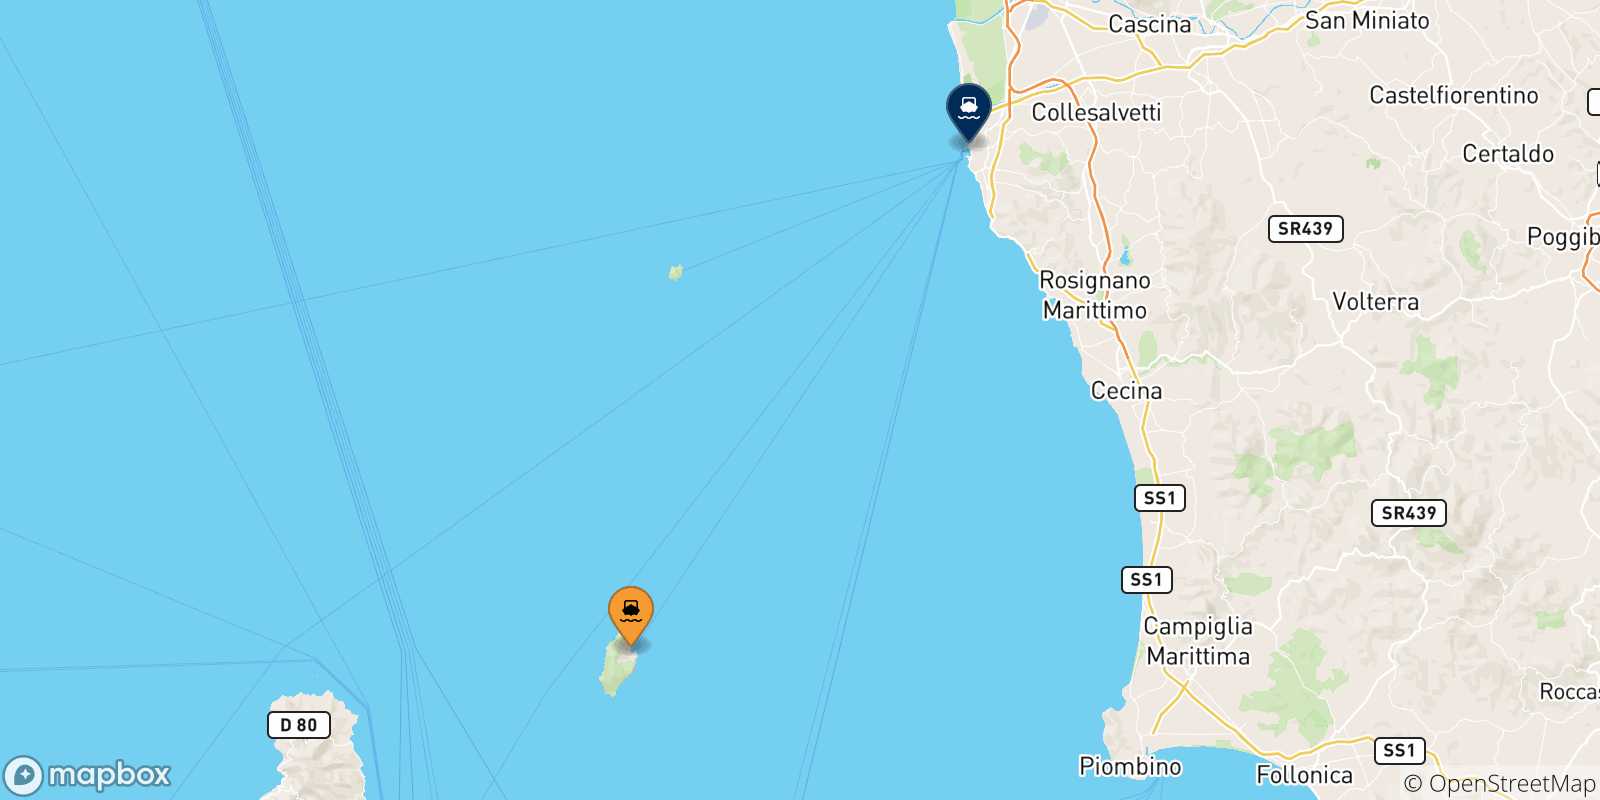 Mappa delle destinazioni raggiungibili dall' Isola Di Capraia